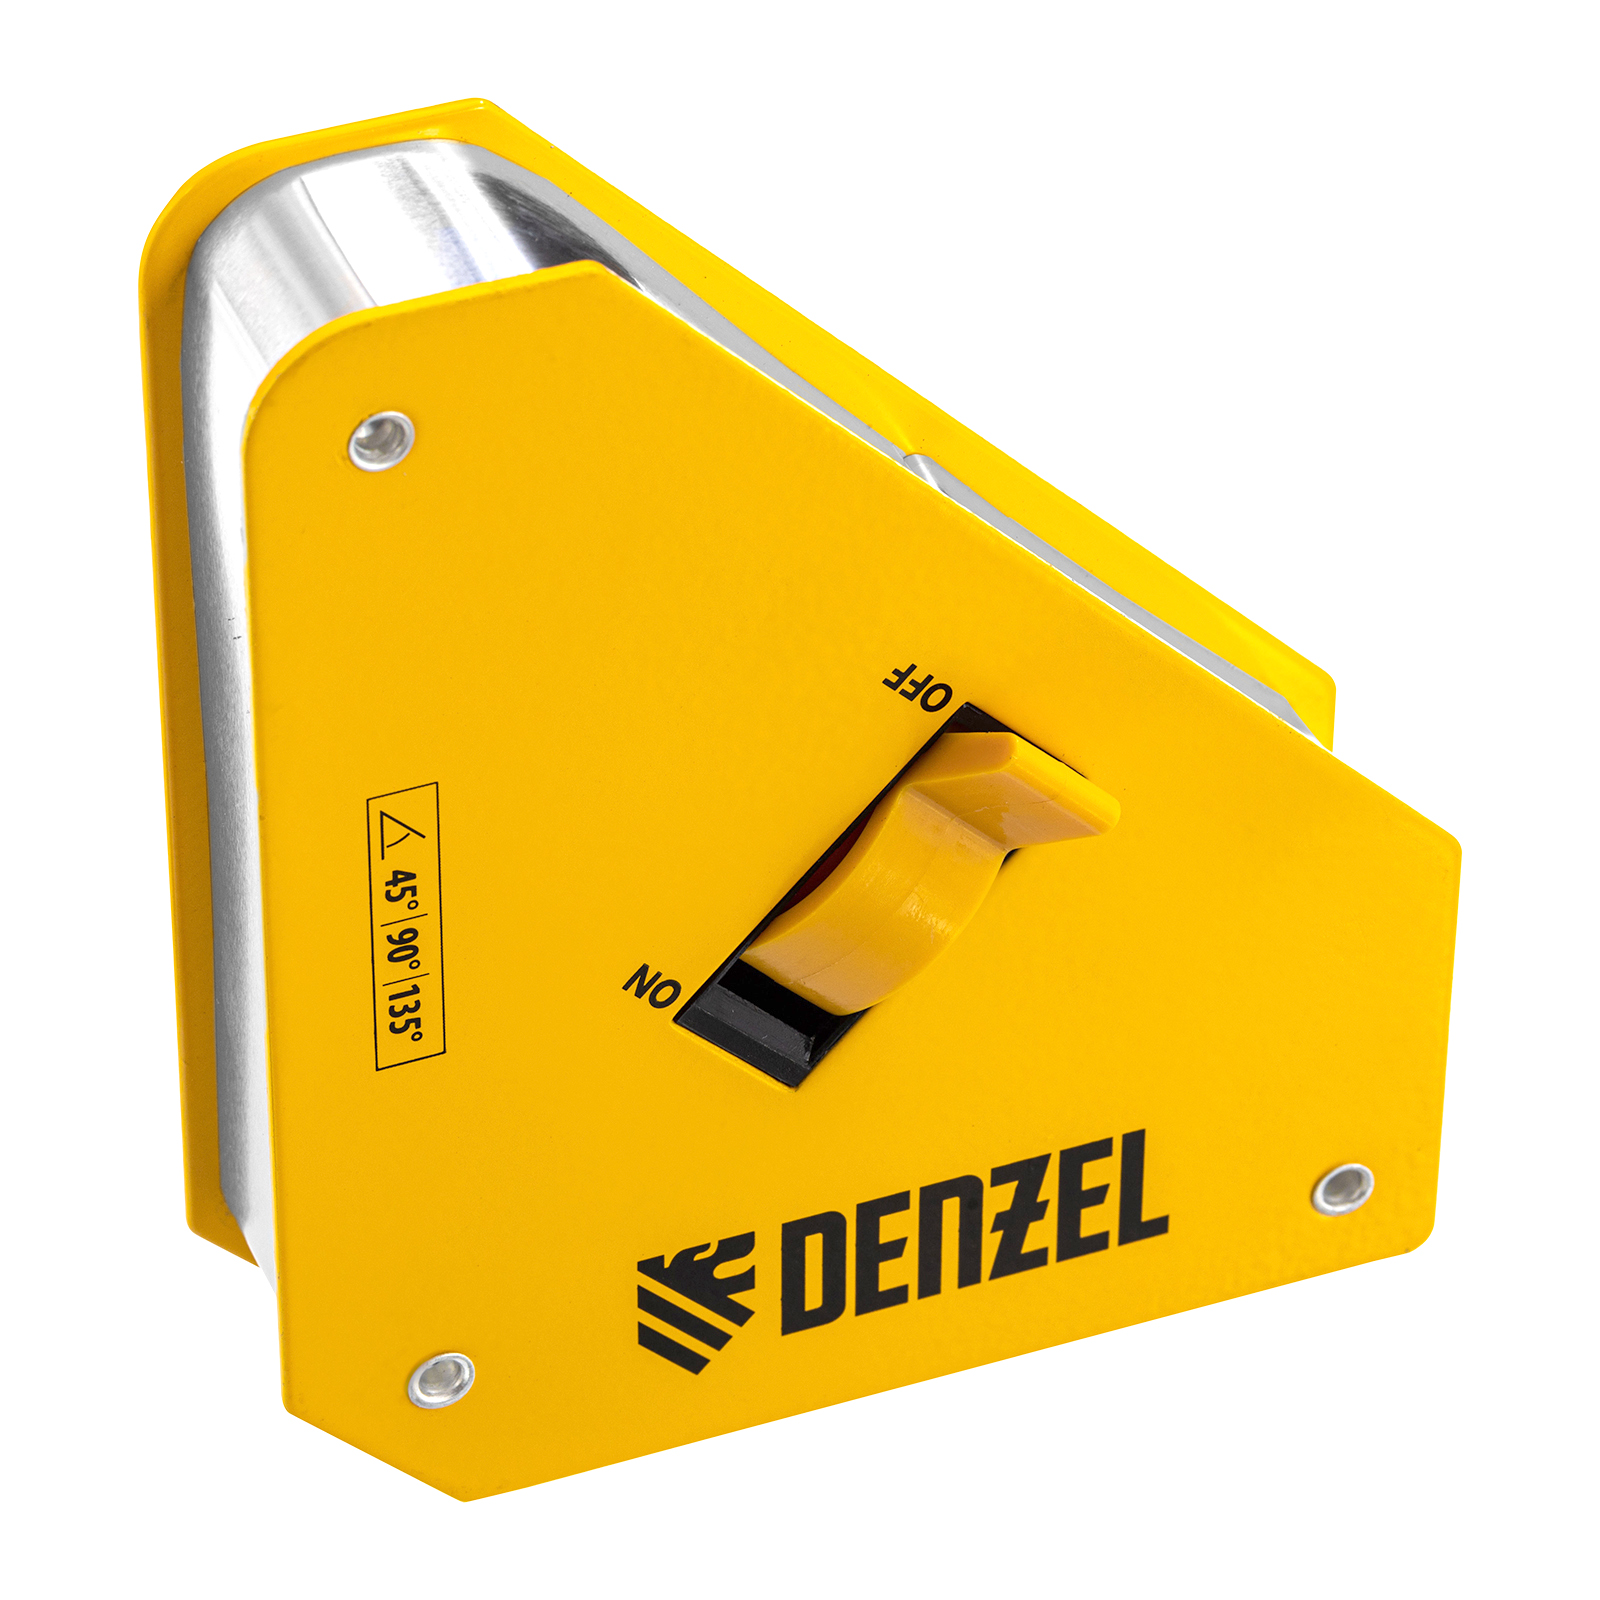 Фиксатор магнитный отключаемый для сварочных работ DENZEL усилие 55 LB, 45х90 град. 97562 фиксатор магнитный отключаемый для сварочных работ denzel усилие 30 lb 45х90х135 гр 97563